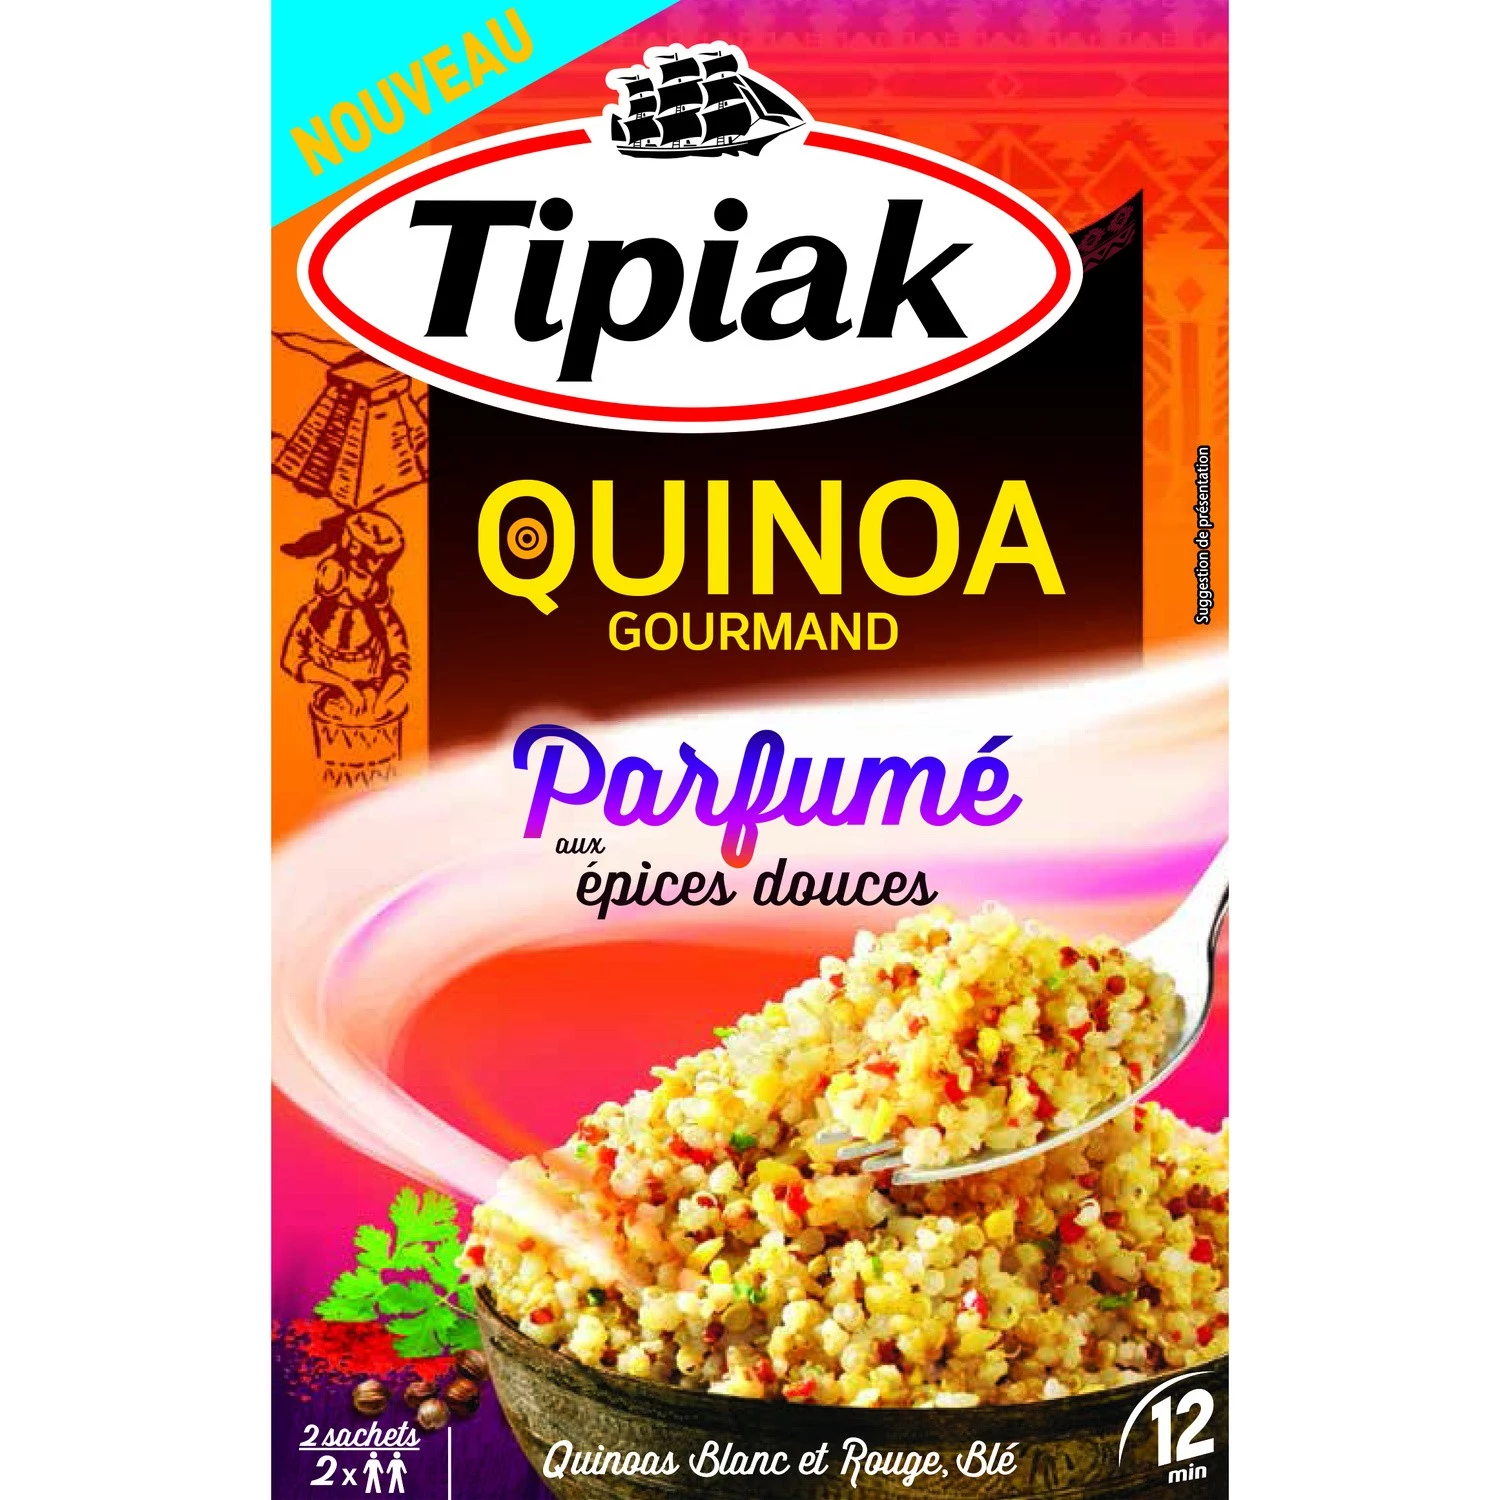 Aromatisierter Gourmet-Quinoa mit süßen Gewürzen, 2x120g - TIPIAK